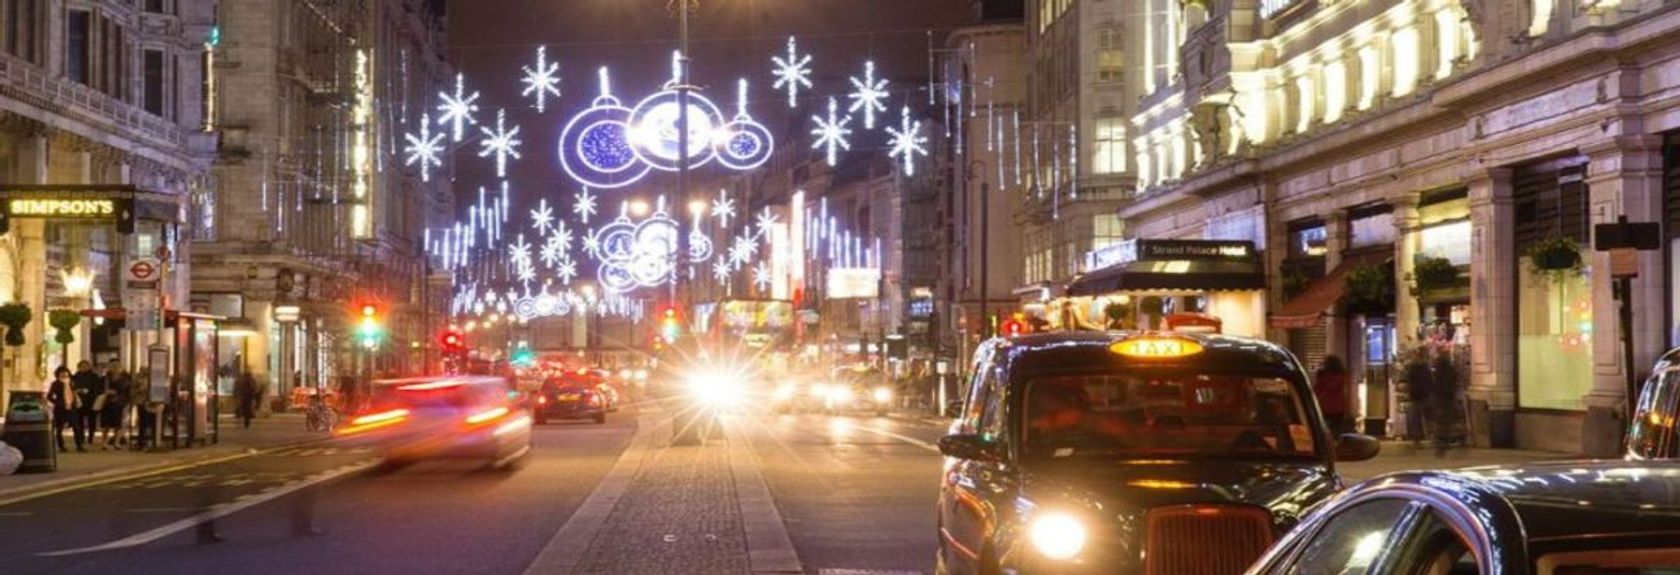 Descubra Londres na época mais bonita do ano e aproveite as espetaculares luzes de Natal em Londres durante esta Christmas lights Tour. Durante o tour por Londres, você pegará um histórico ônibus vermelho de dois andares com teto aberto no caminho pelo centro de Londres e verá as ruas iluminadas com luzes de Natal e ficará completamente imerso na atmosfera natalina. Você poderá ver as belas luzes da famosa Oxford Street, ver as exclusivas vitrines do Harrods passando e todas as outras ruas iluminadas e decorações de Natal no coração de Londres.